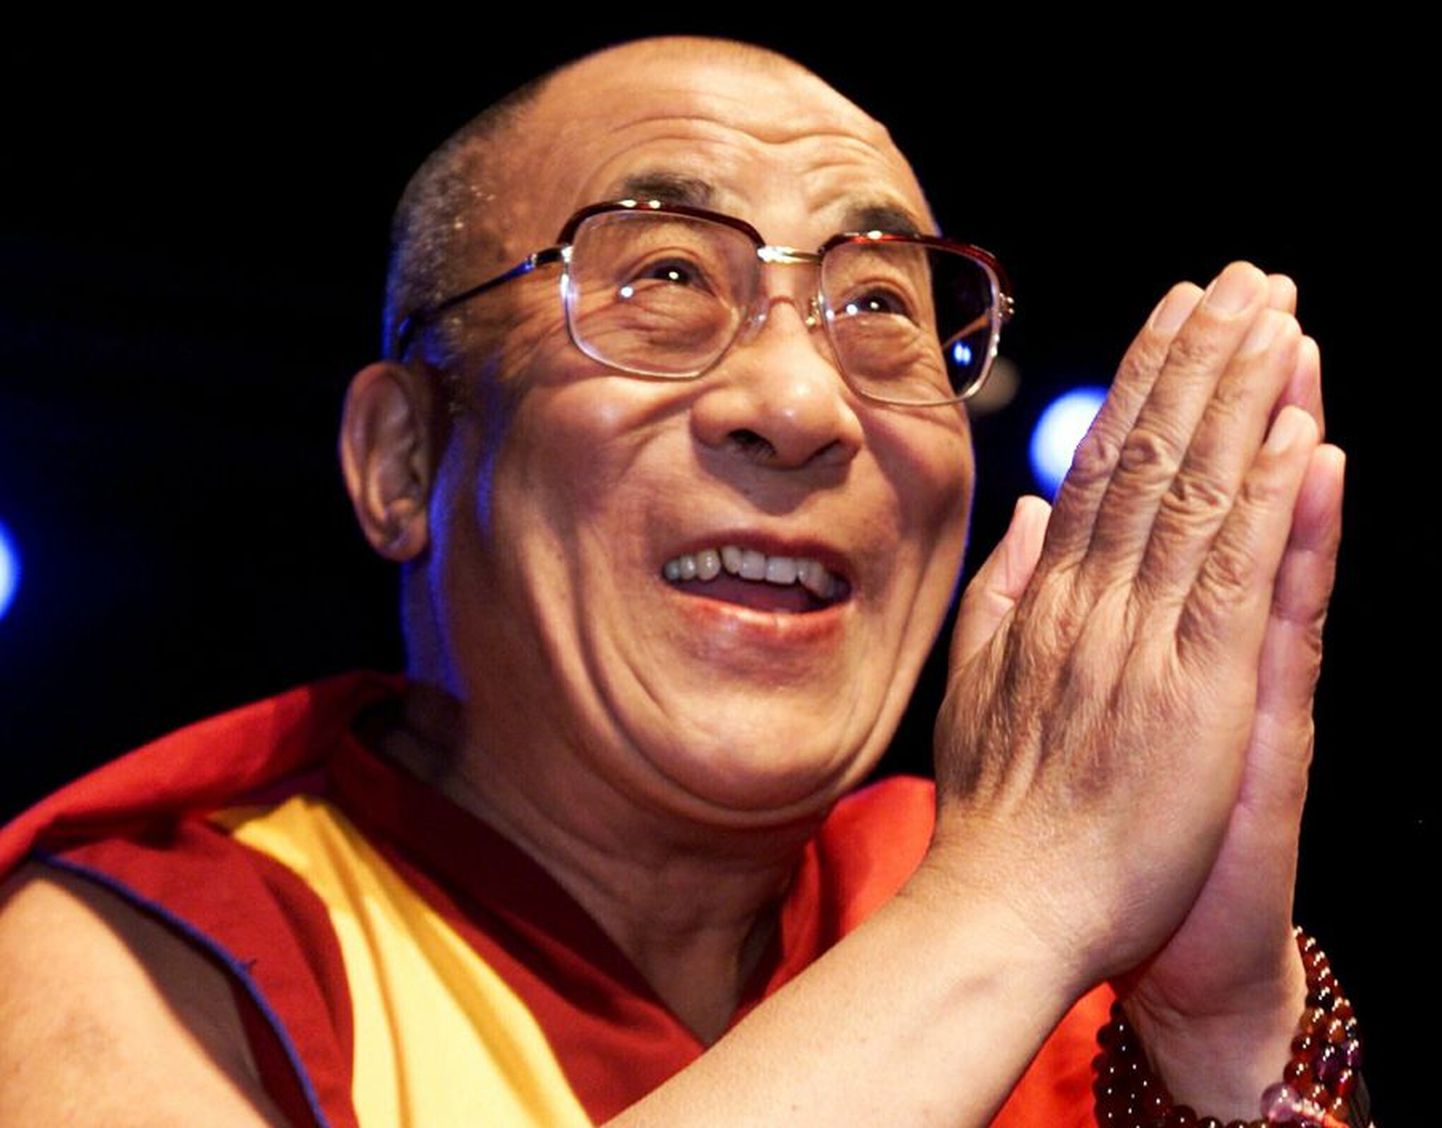 Dalai-laama on elanud üle poole sajandi paguluses, sest taotleb Tiibeti iseseisvust, mis ei ole Hiina võimudele vastuvõetav.